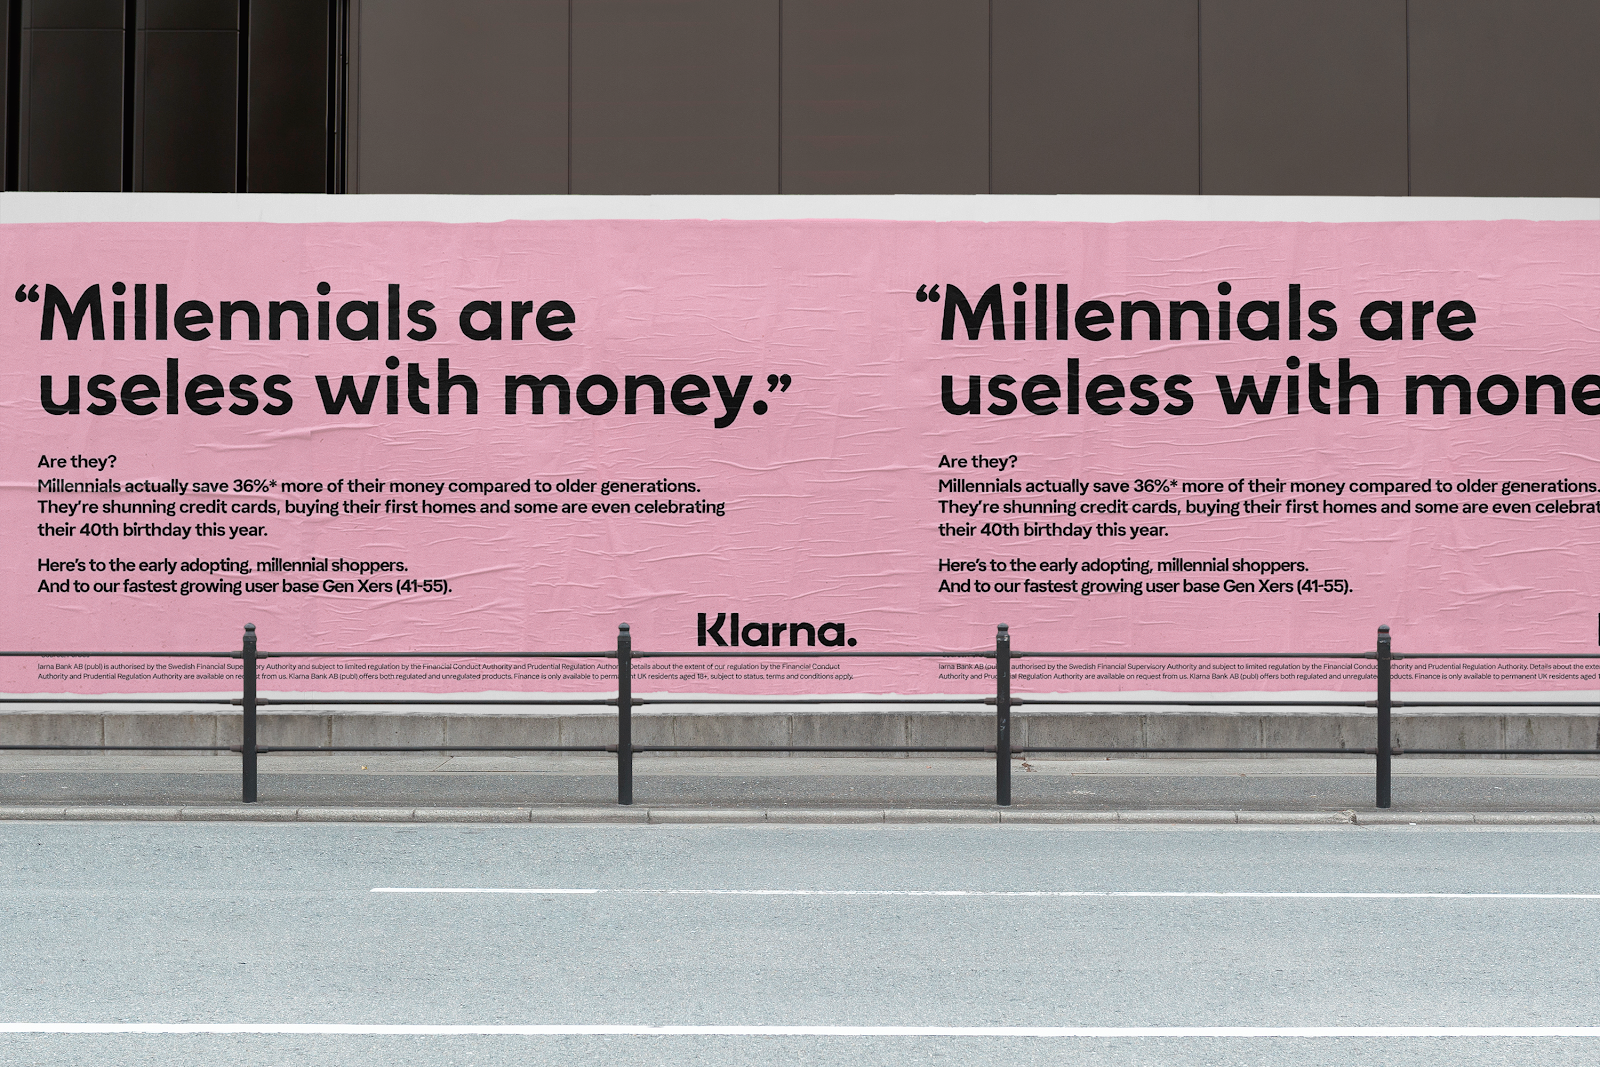 Klarna launches new campaign